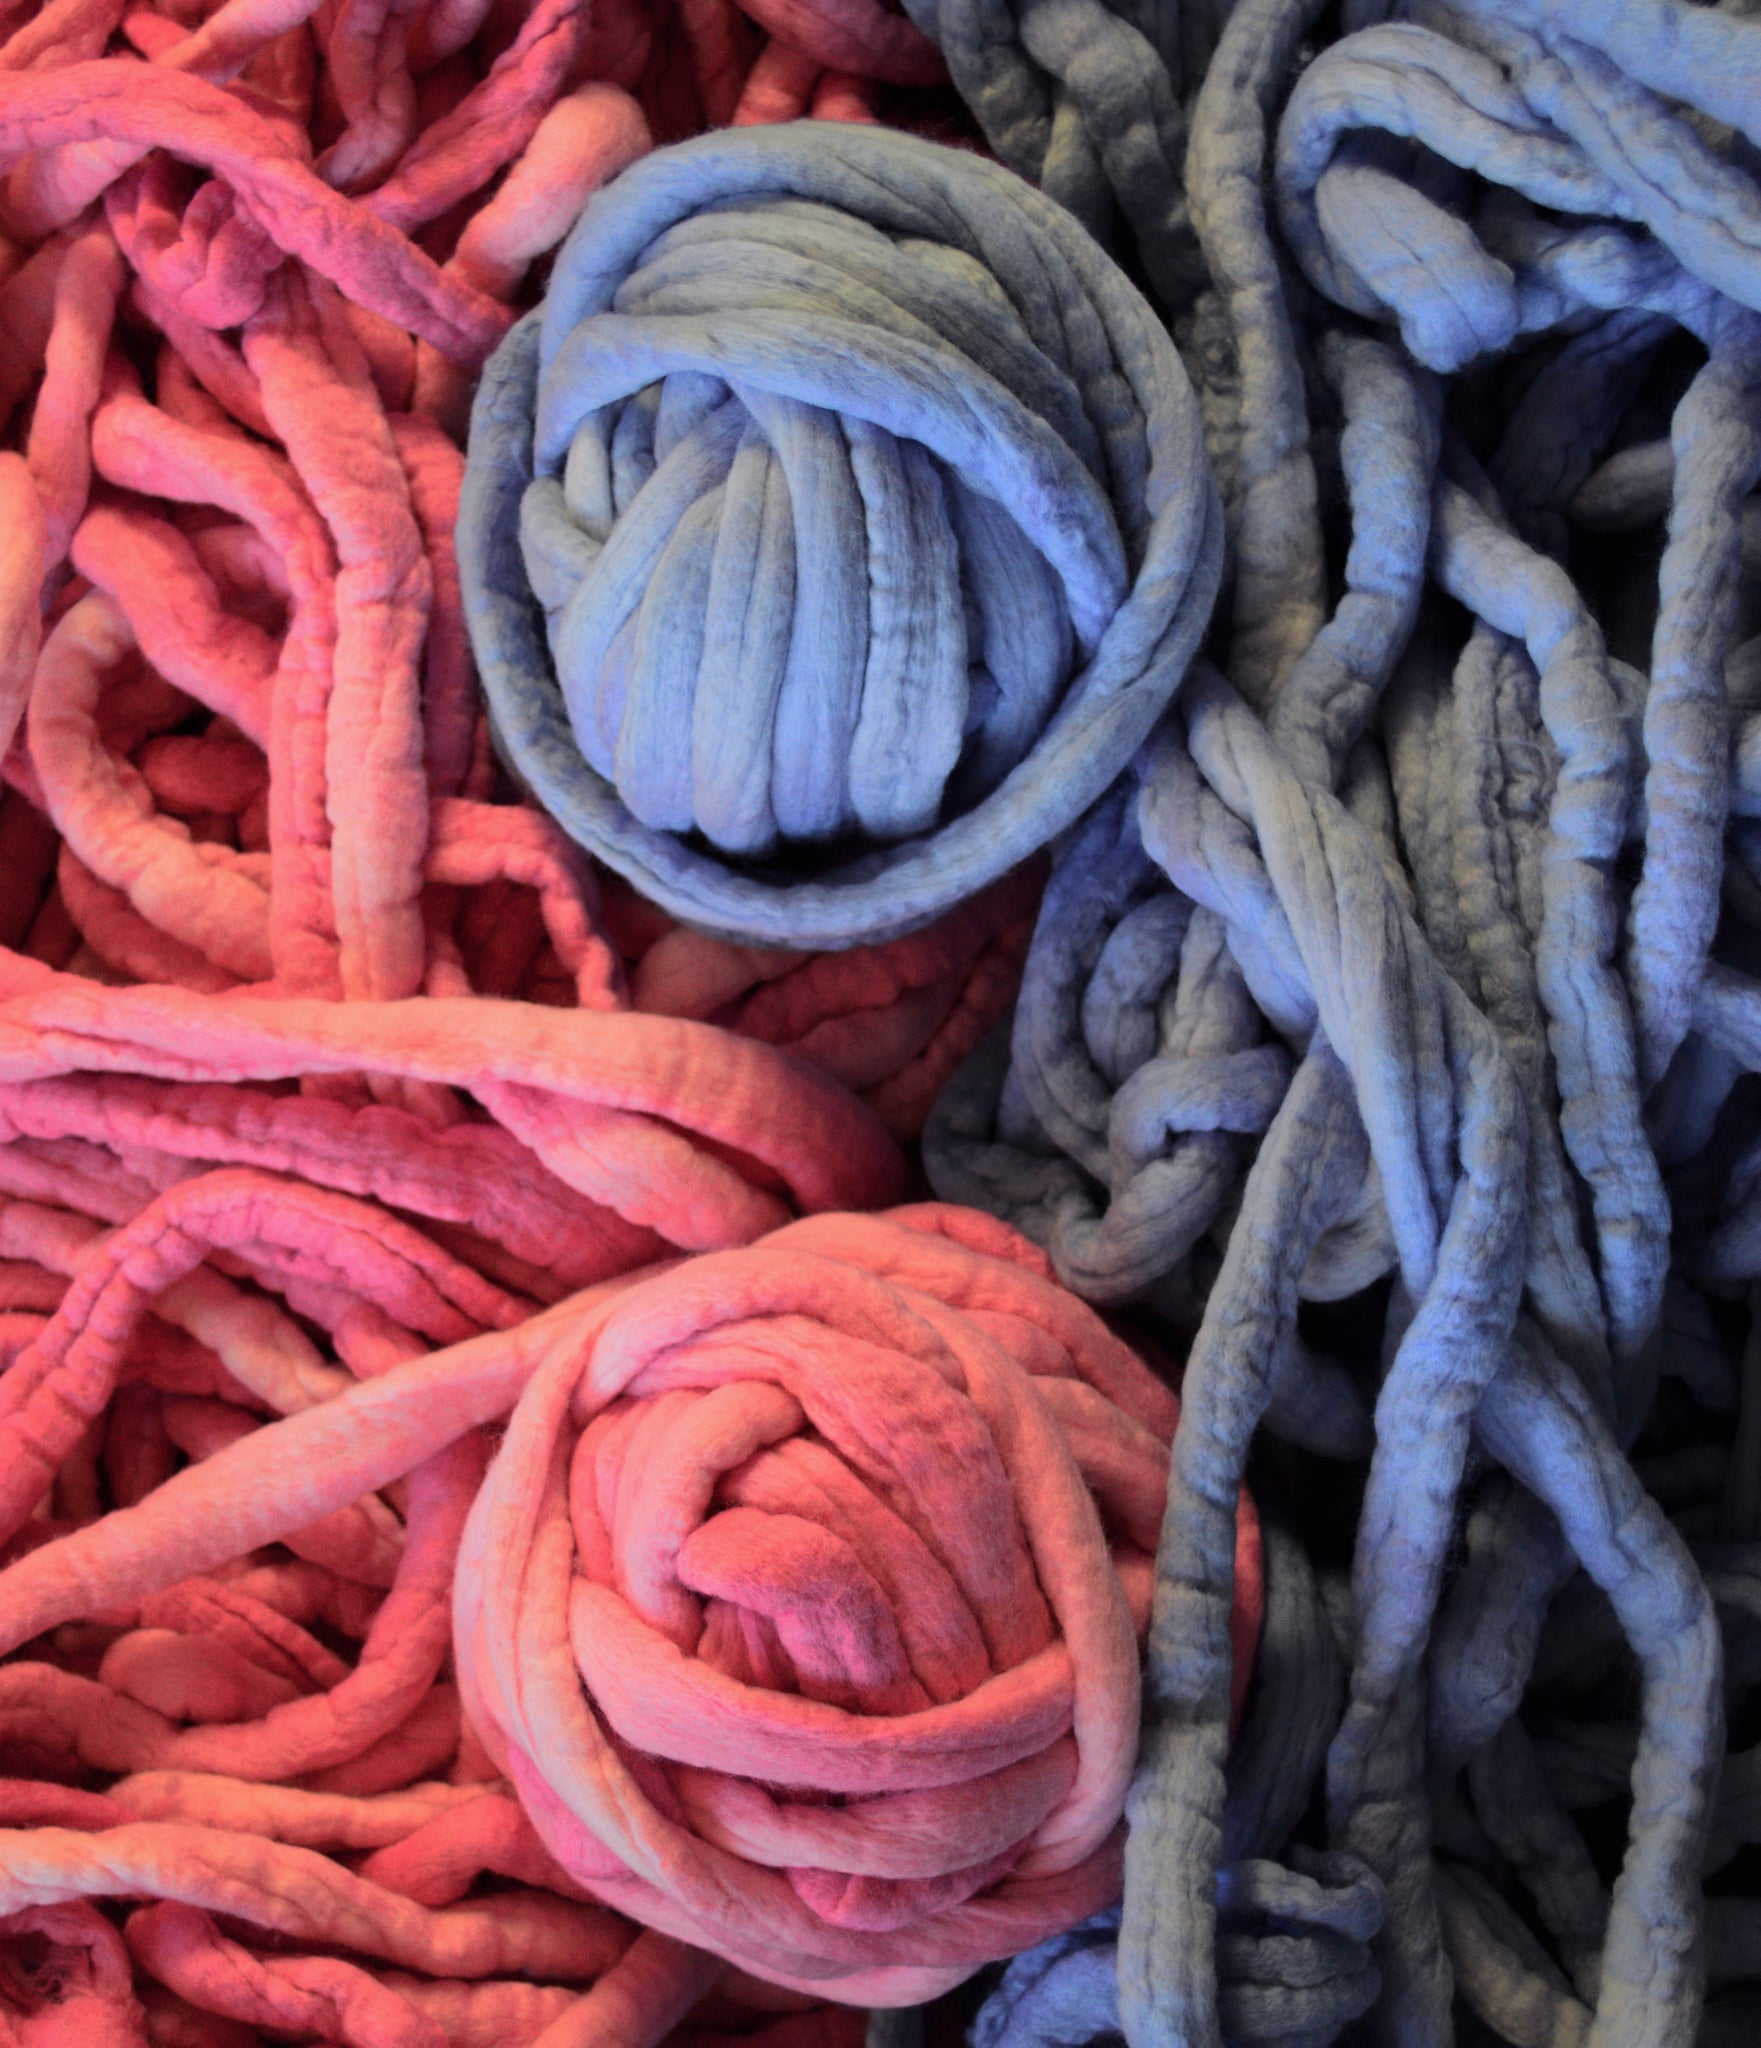 Chunky Knit Yarn, Arm Knitting Yarn